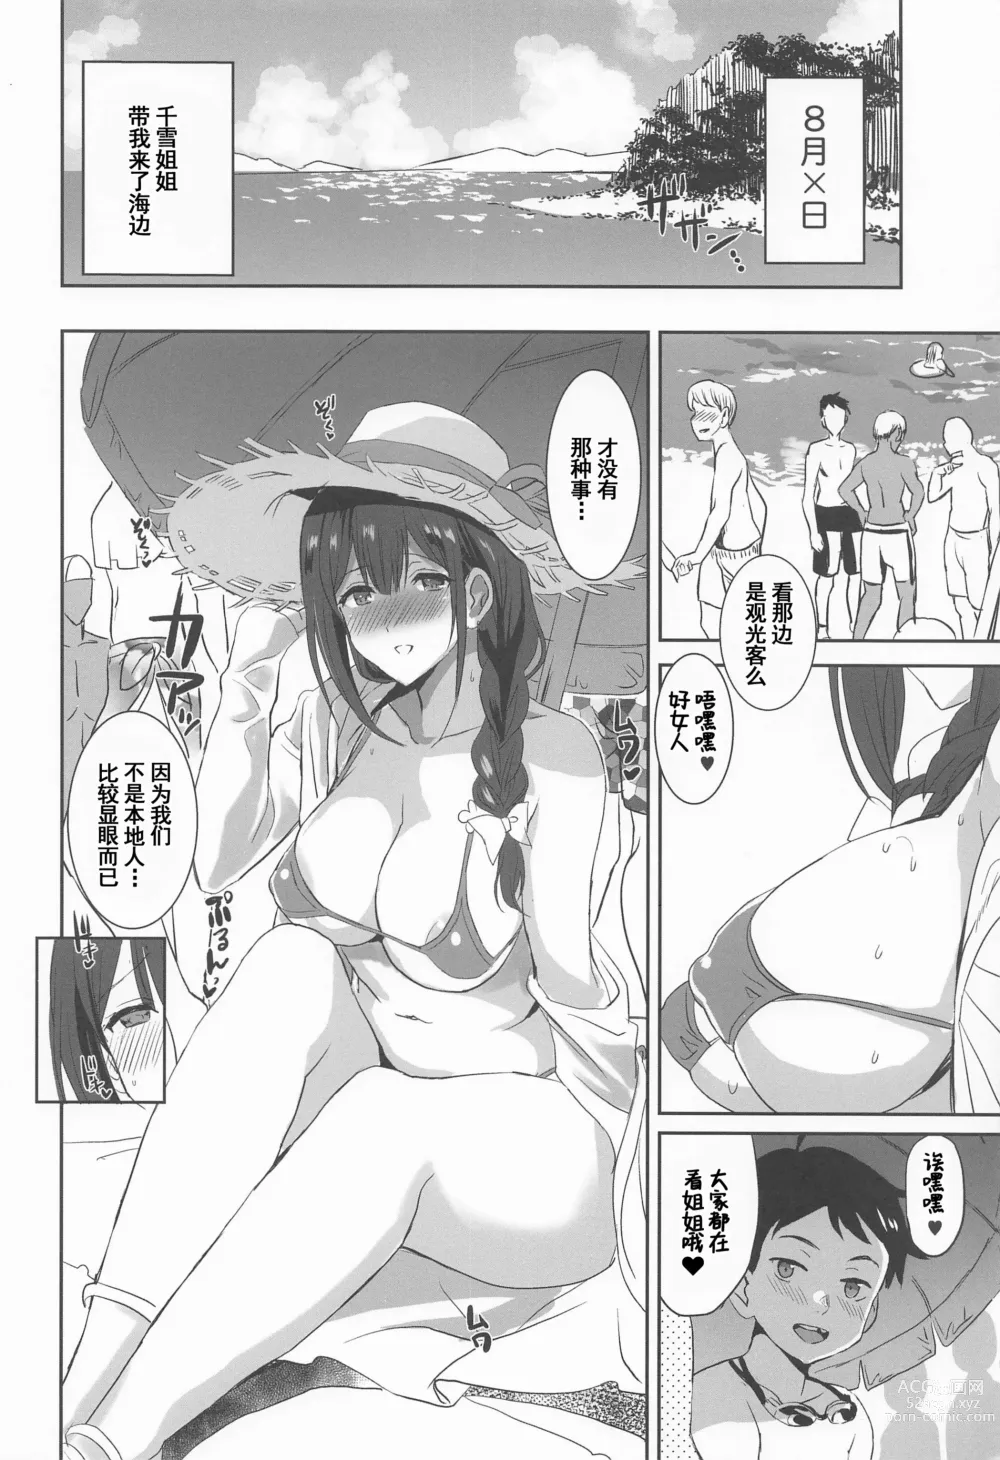 Page 7 of doujinshi Natsuyasumi no Saimin Jiyuu Kenkyuu Zoku Chiyuki Onee-chan no Echi Echi Kansatsu